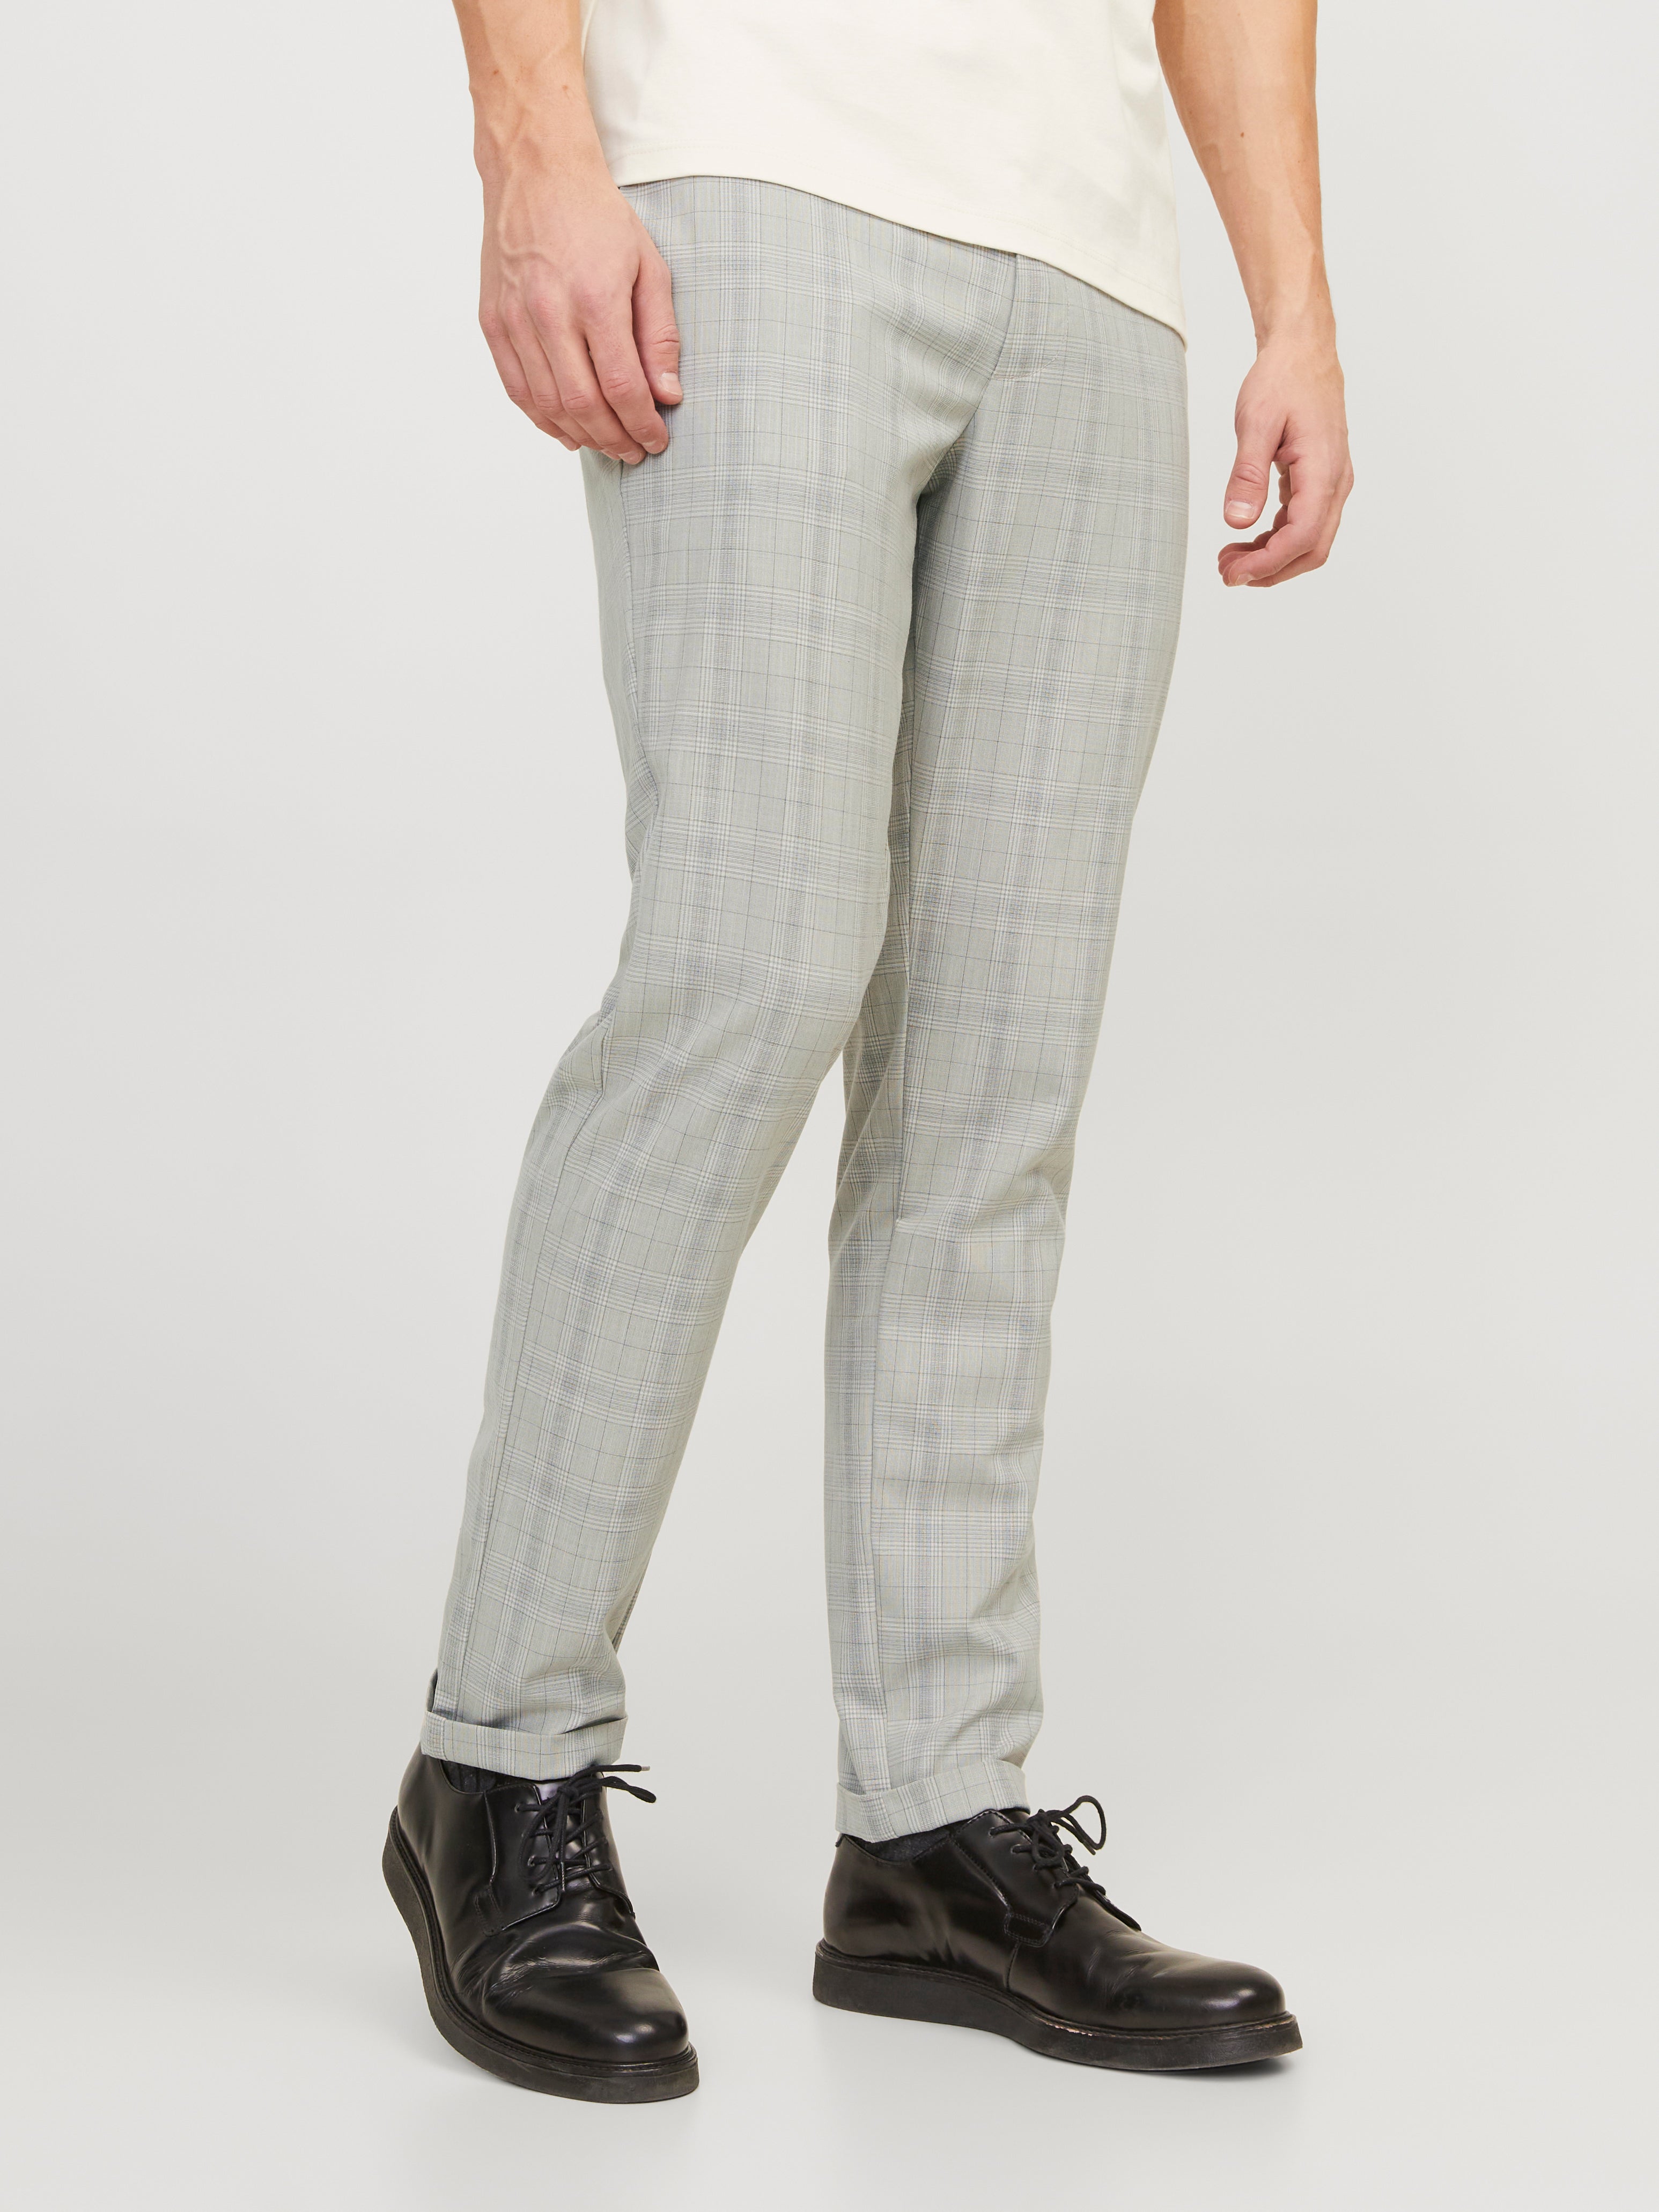 Mens Herringbone Tweed Check Trousers - Cavani Albert - Tan: Buy Online -  Happy Gentleman United States